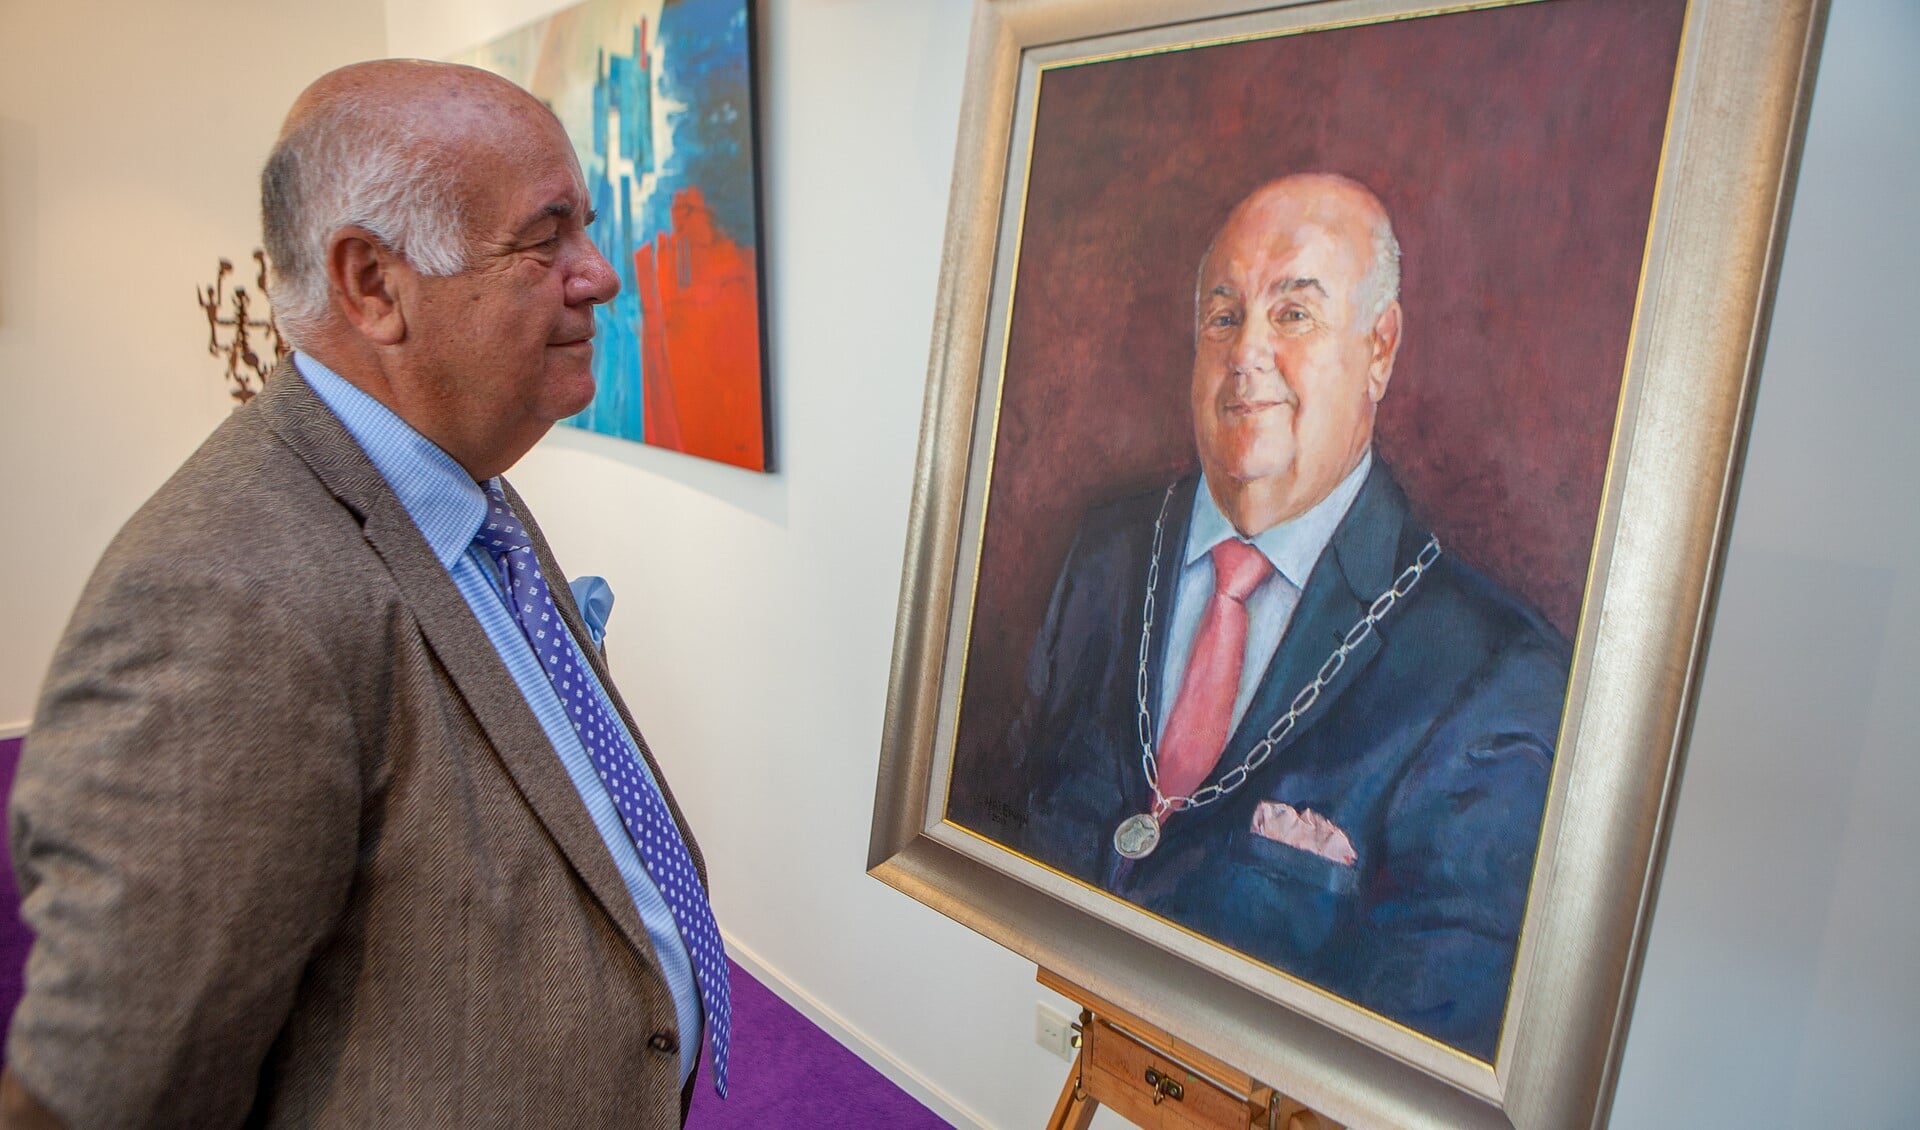 Burgemeester Fons Hartog bekijkt het portret dat Cynthia Halewijn van hem maakte ter gelegenheid van zijn pensionering.